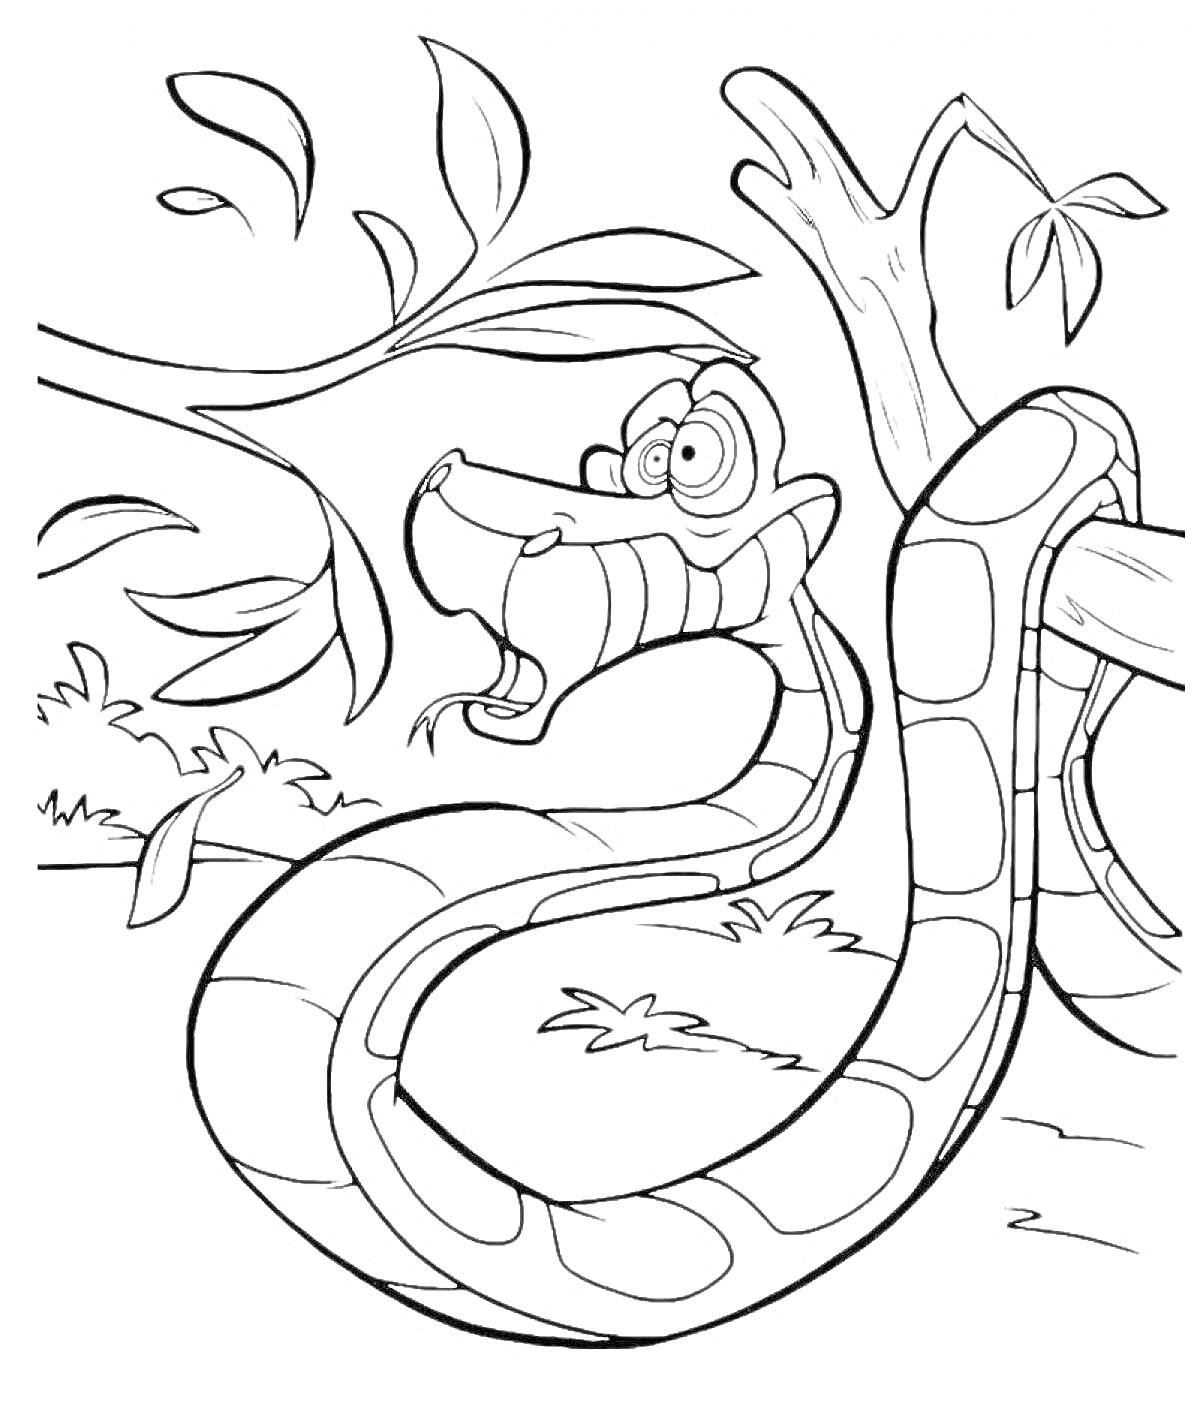 Раскраска Змея на дереве со смеющимся лицом и листьями вокруг